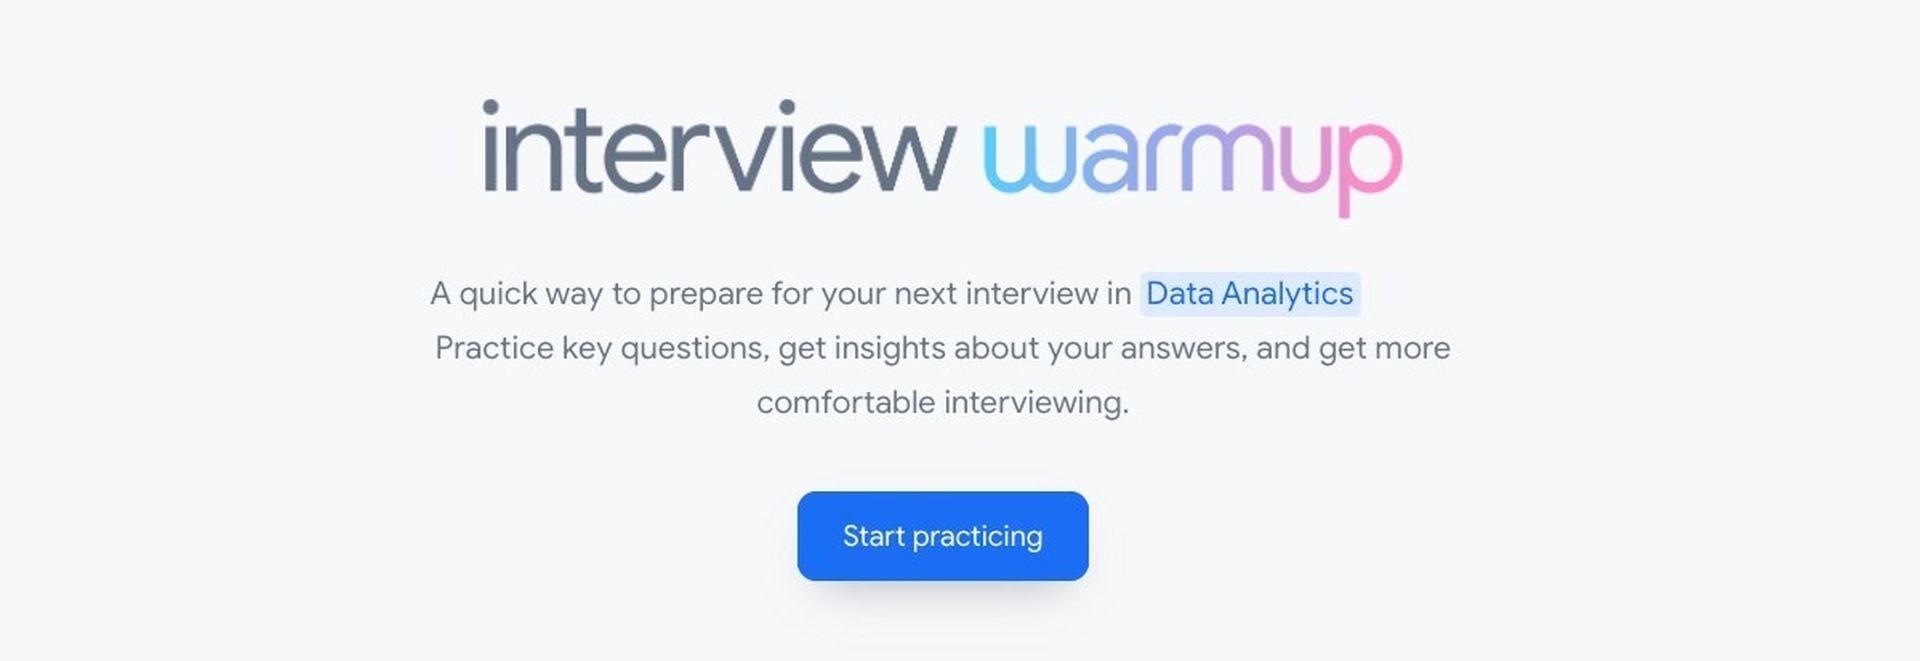 Hvis du føler dig nervøs før en jobsamtale, vil det nye AI-værktøj kaldet Google Interview Warmup hjælpe dig med at øve dig på forhånd.  Google har nu et værktøj til at hjælpe kandidater med at praktisere jobsamtaler.  Det er rigtigt, at jobsamtaler kan være stressende.  Du kan øve dig og være mere forberedt, før du går til et interview takket være Googles nye værktøj.